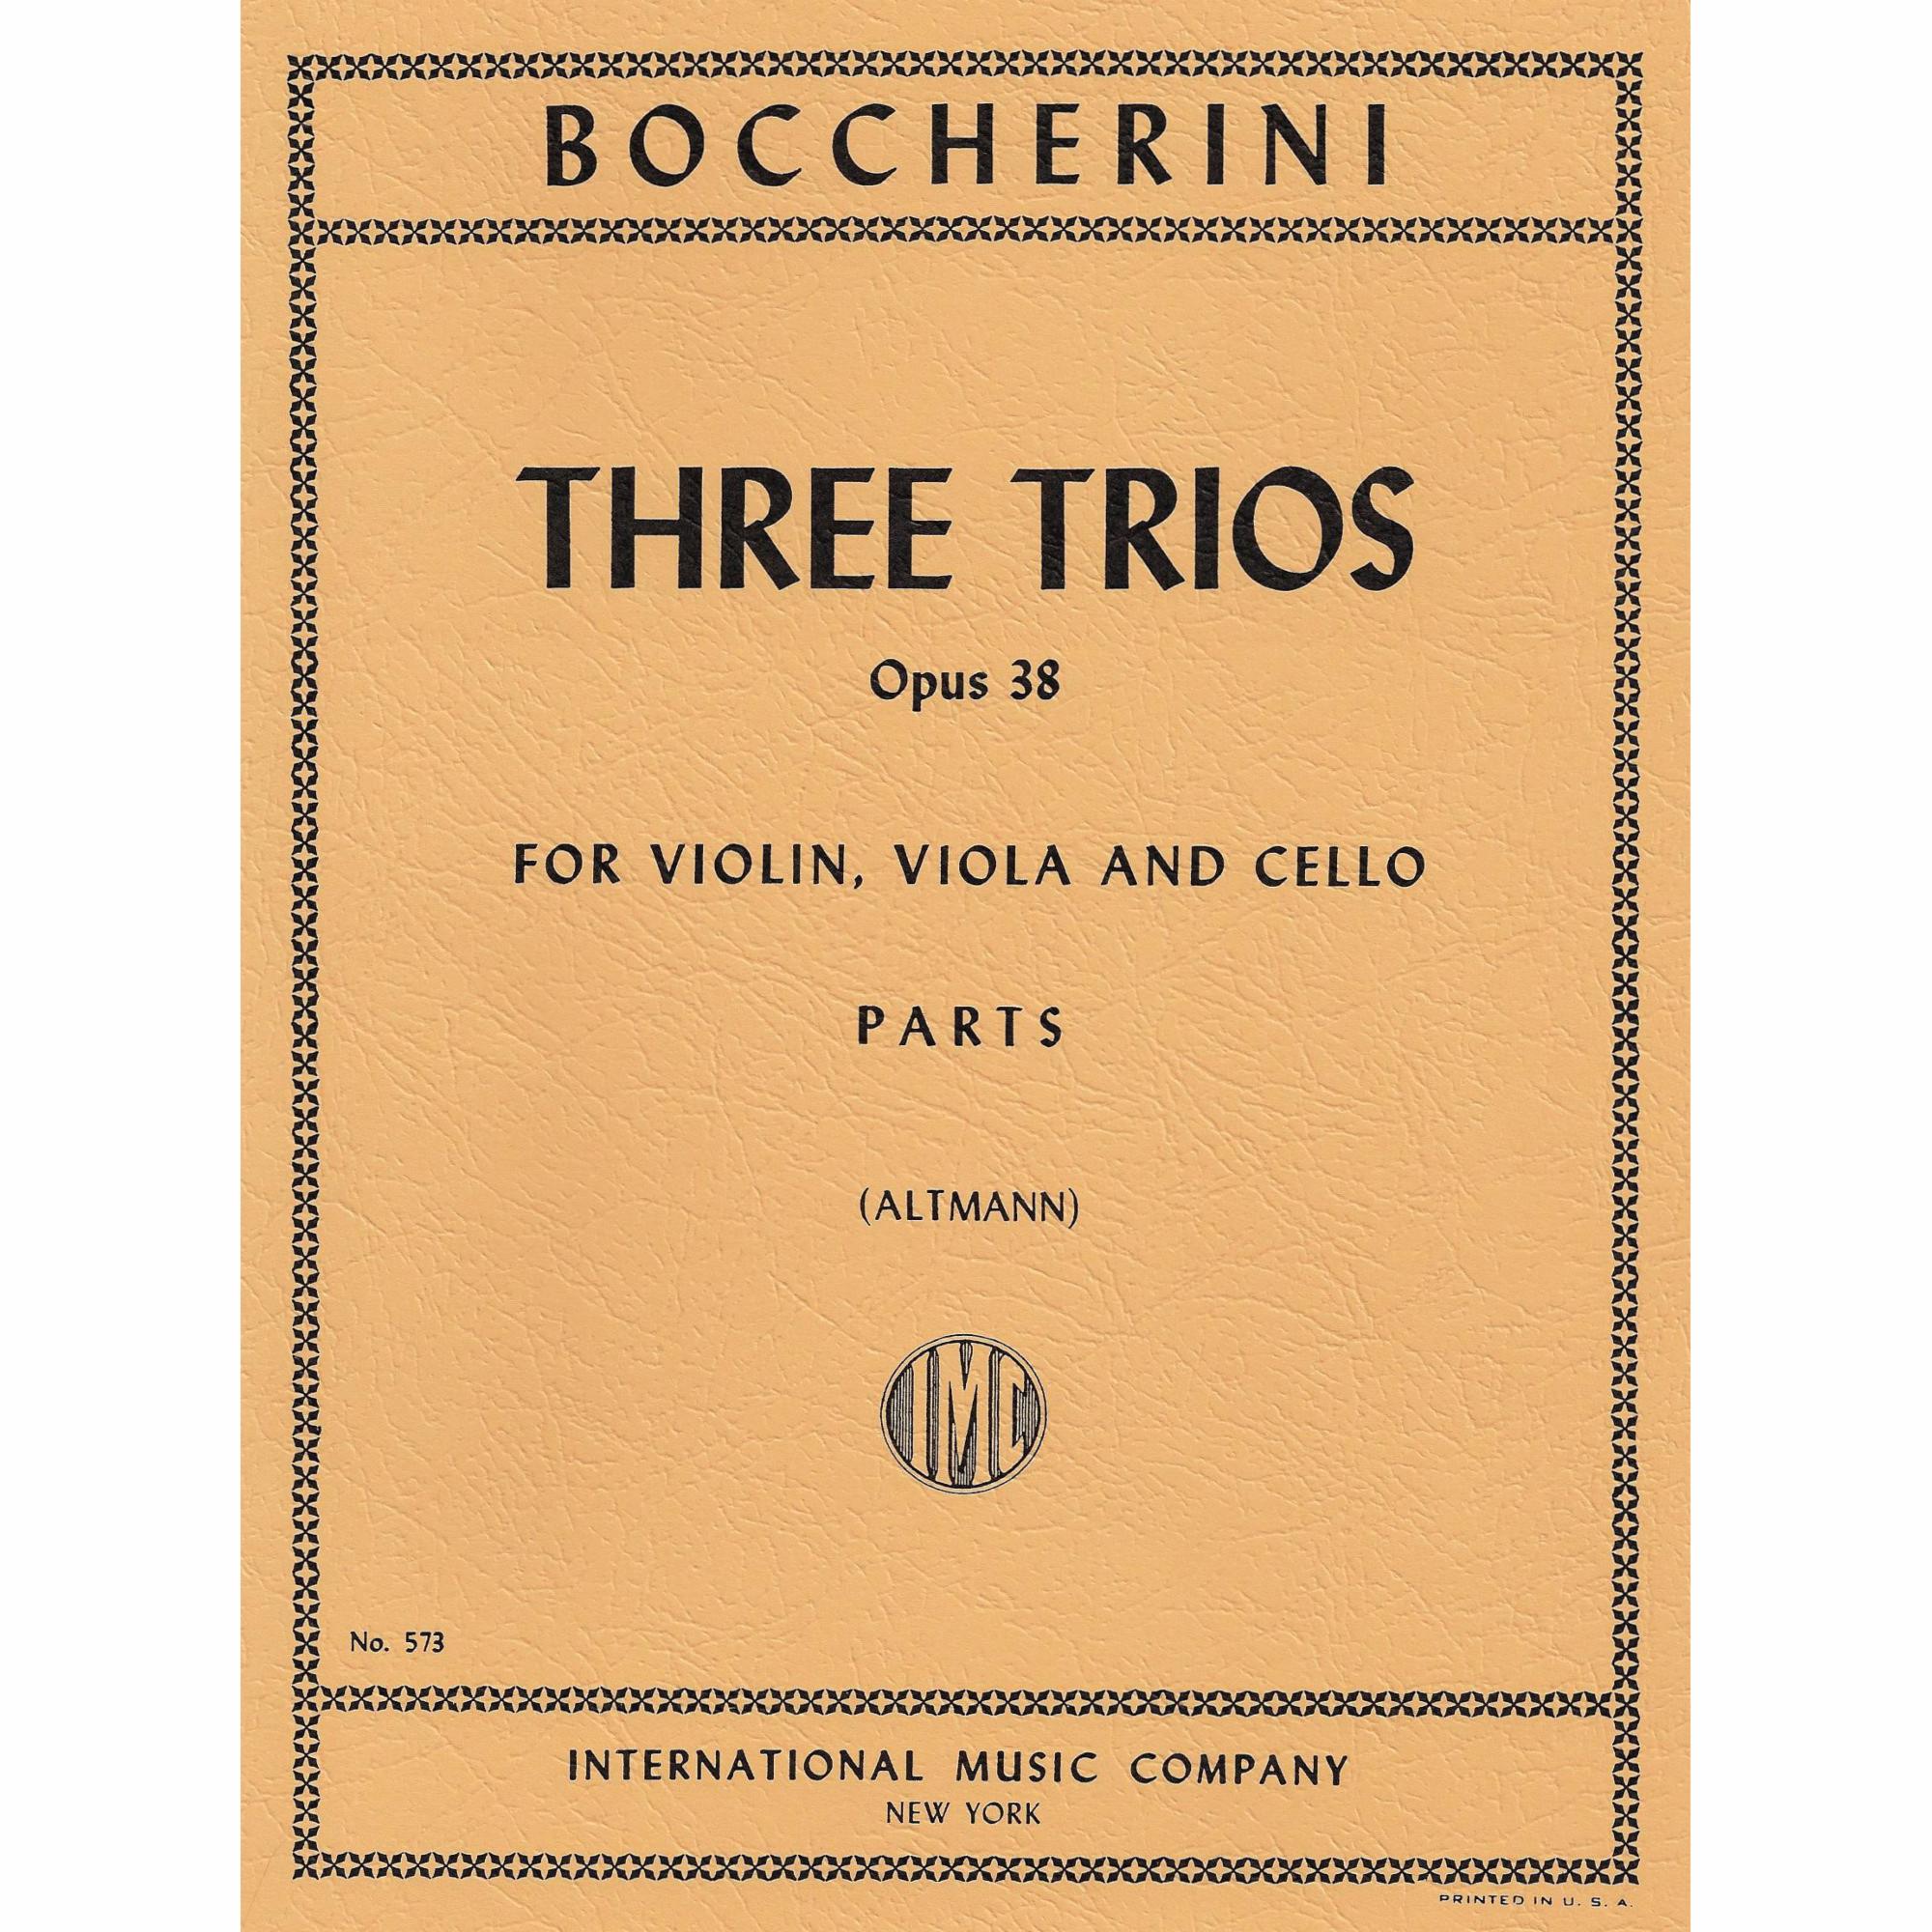 Boccherini -- Three Trios, Op. 38 for Violin, Viola, and Cello